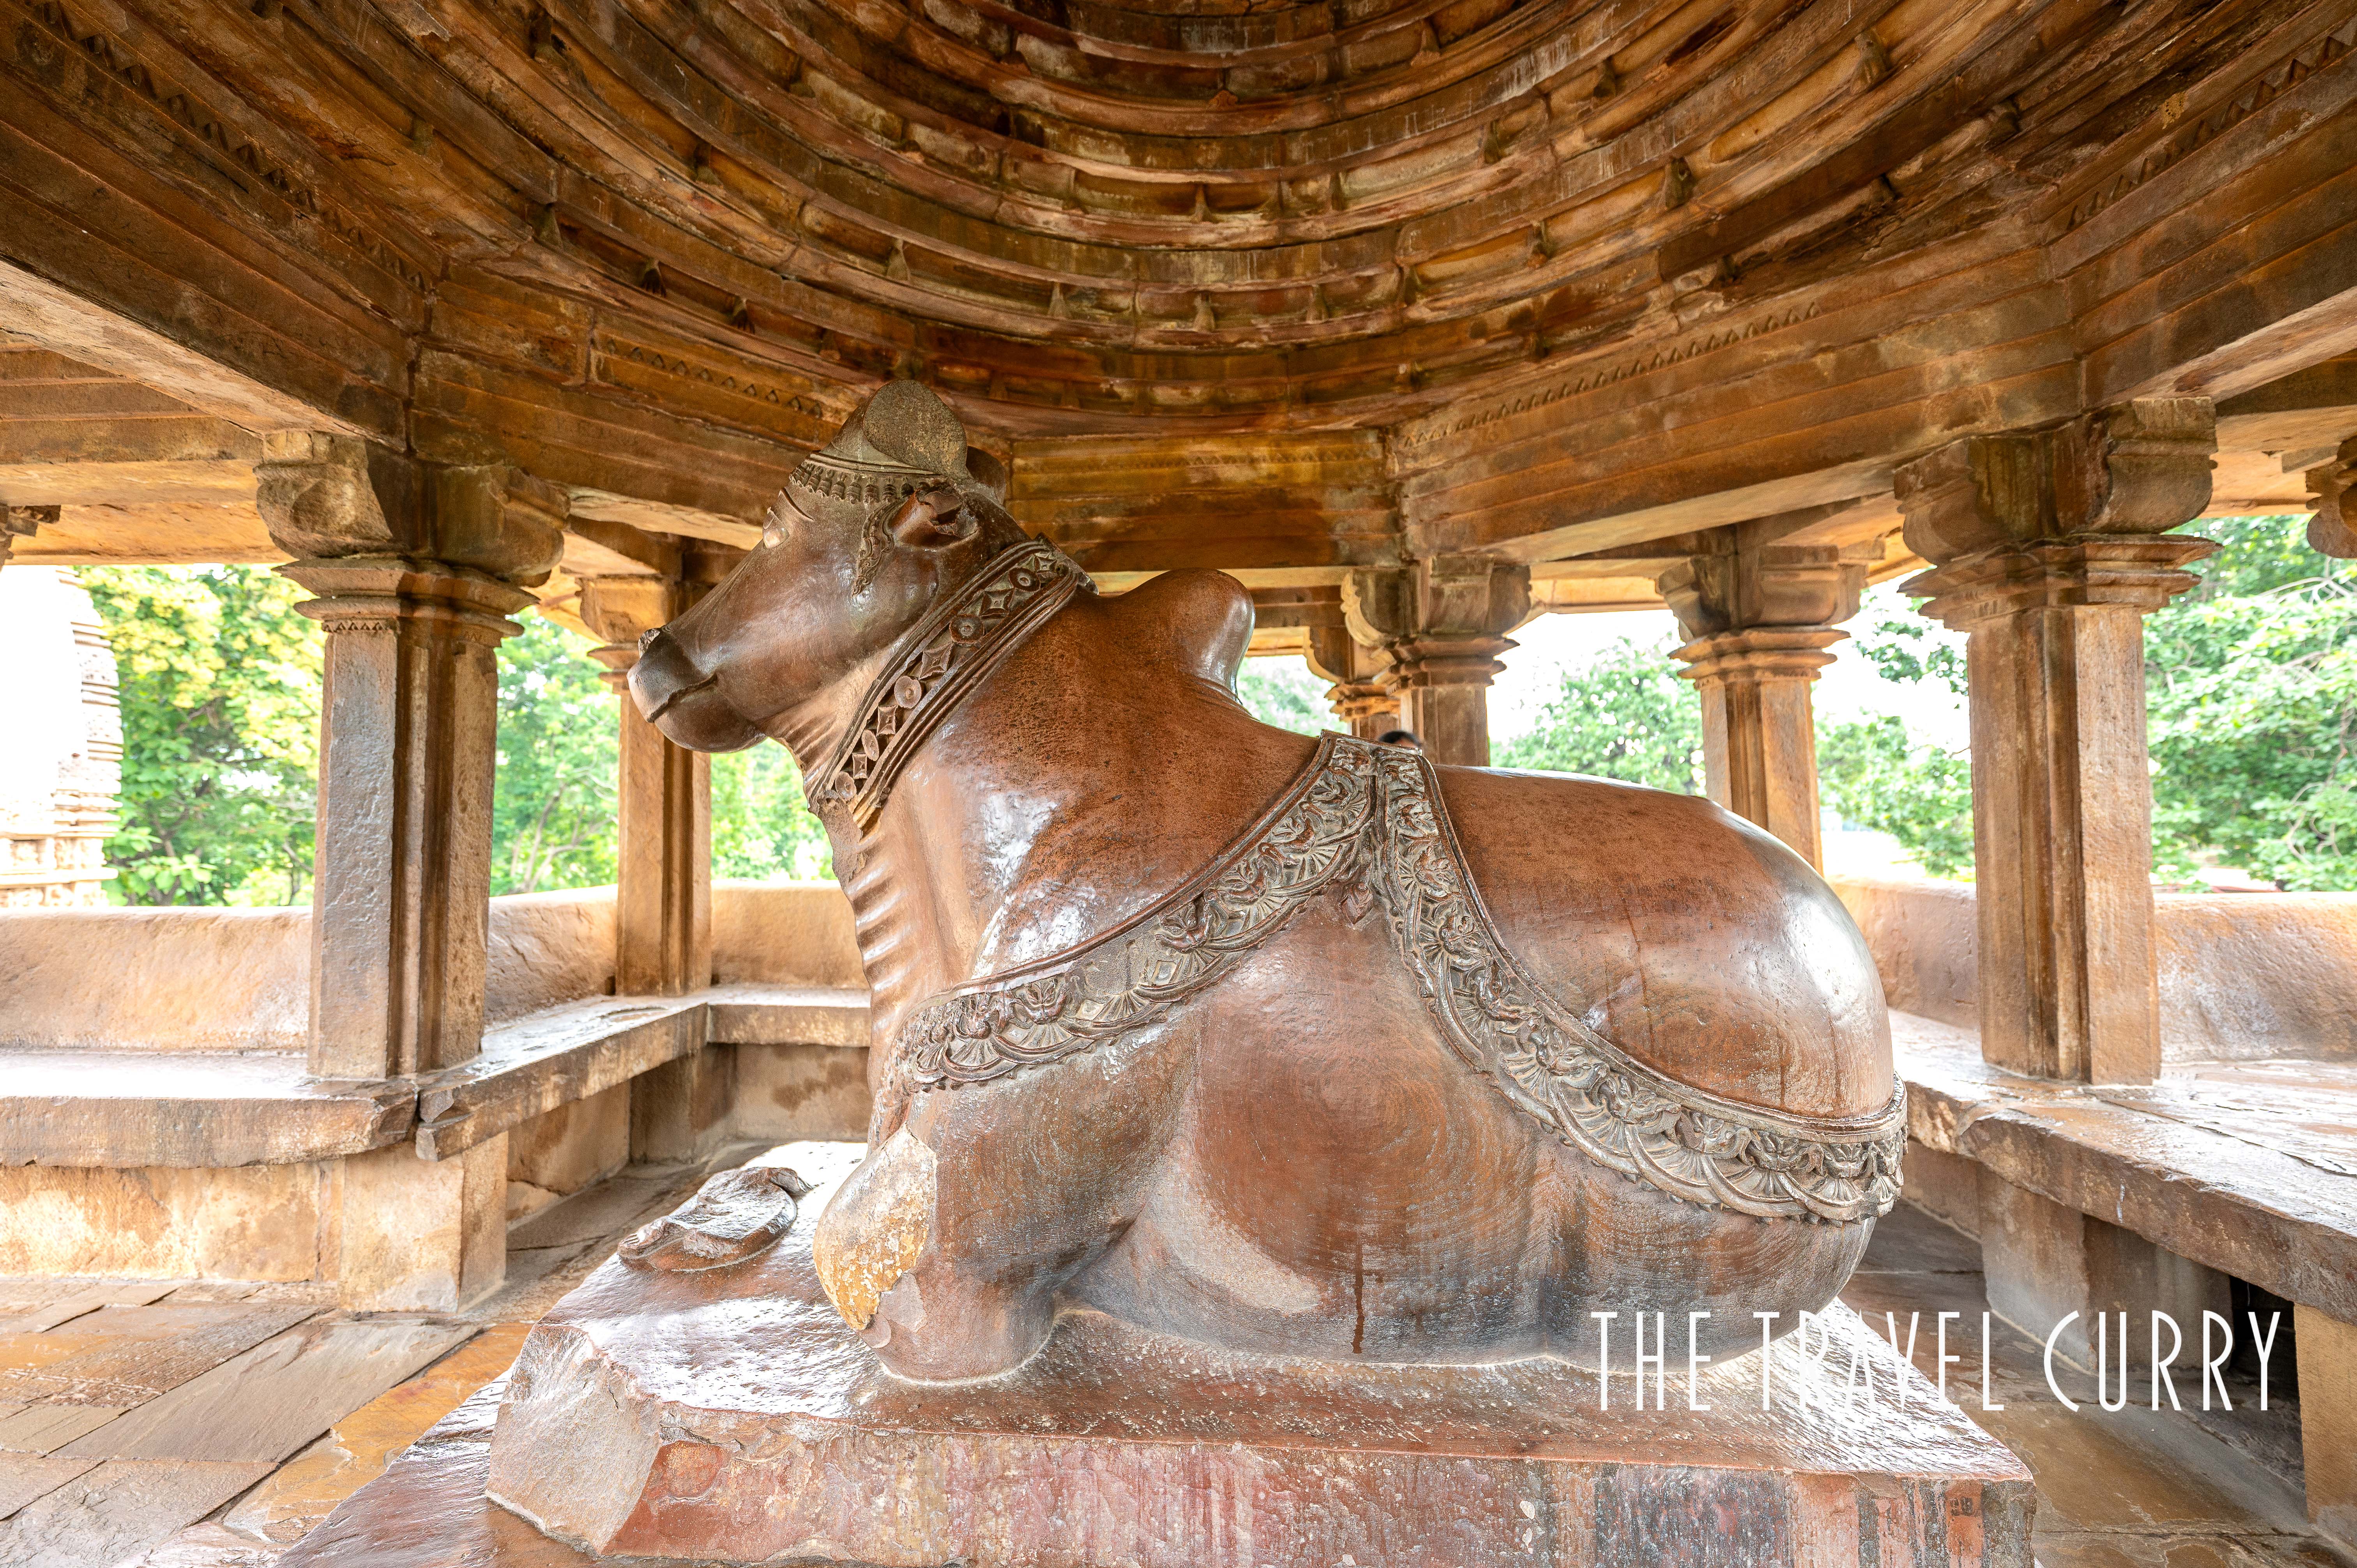 The Nandi shrine facing Vishvanath temple in Khajuraho